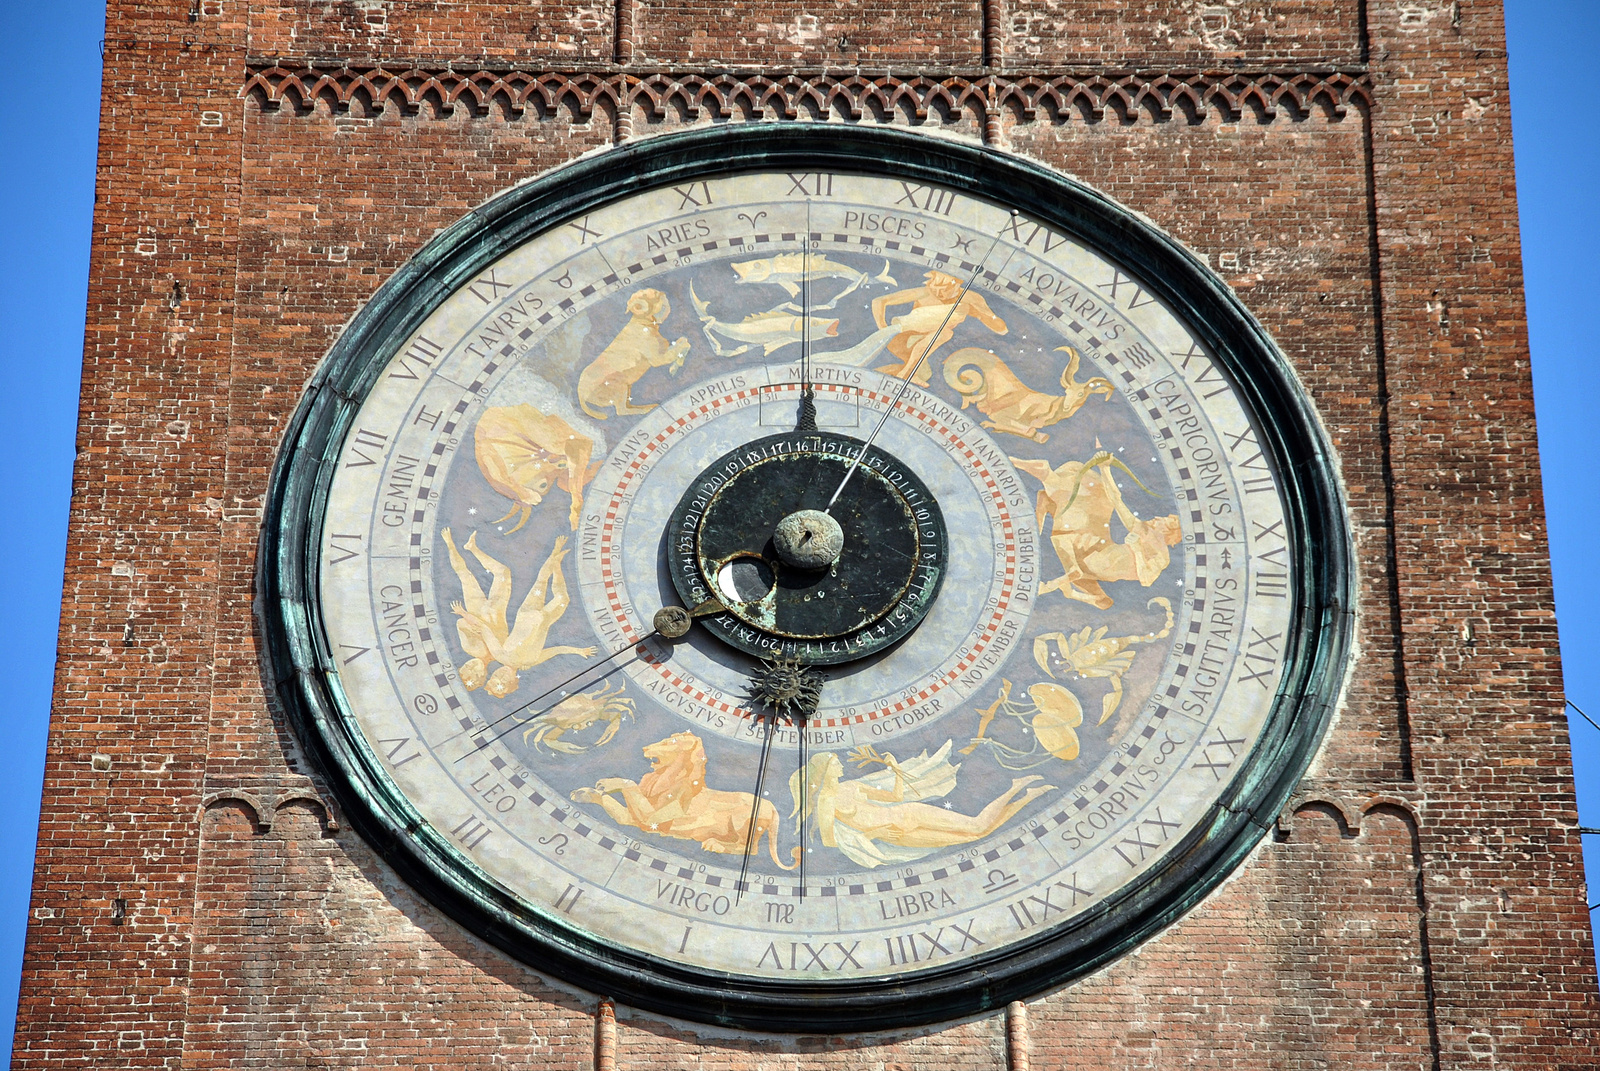 Cremona időmérője